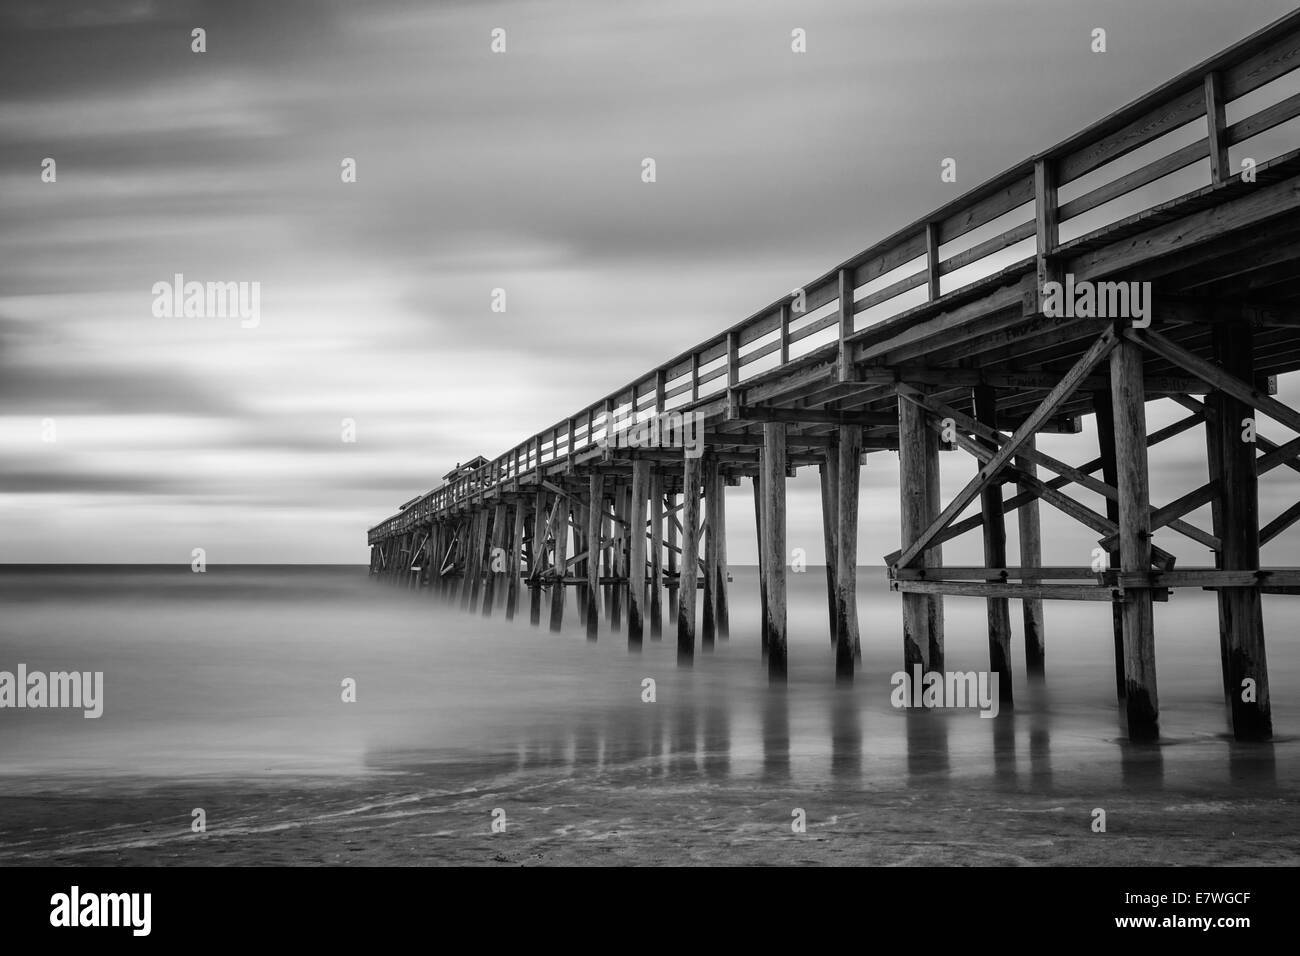 Une longue exposition photo de la jetée de pêche en Amelia Island Fernandina Beach, en Floride. Converties en noir et blanc. Banque D'Images